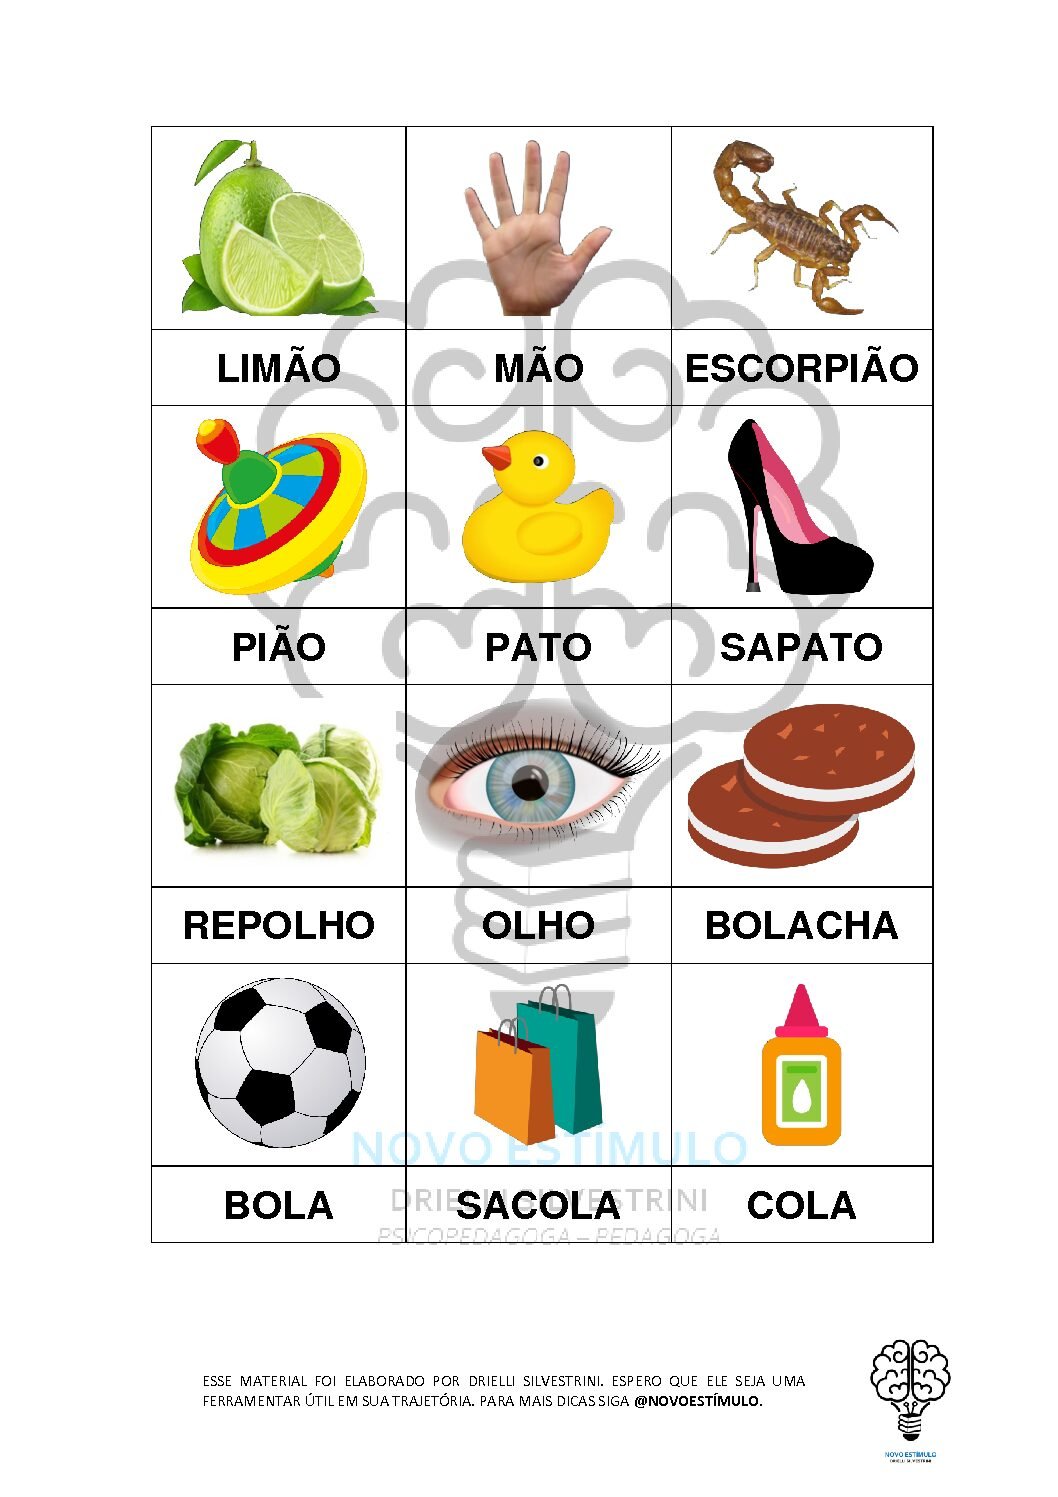 Jogos de-lingua-portuguesa